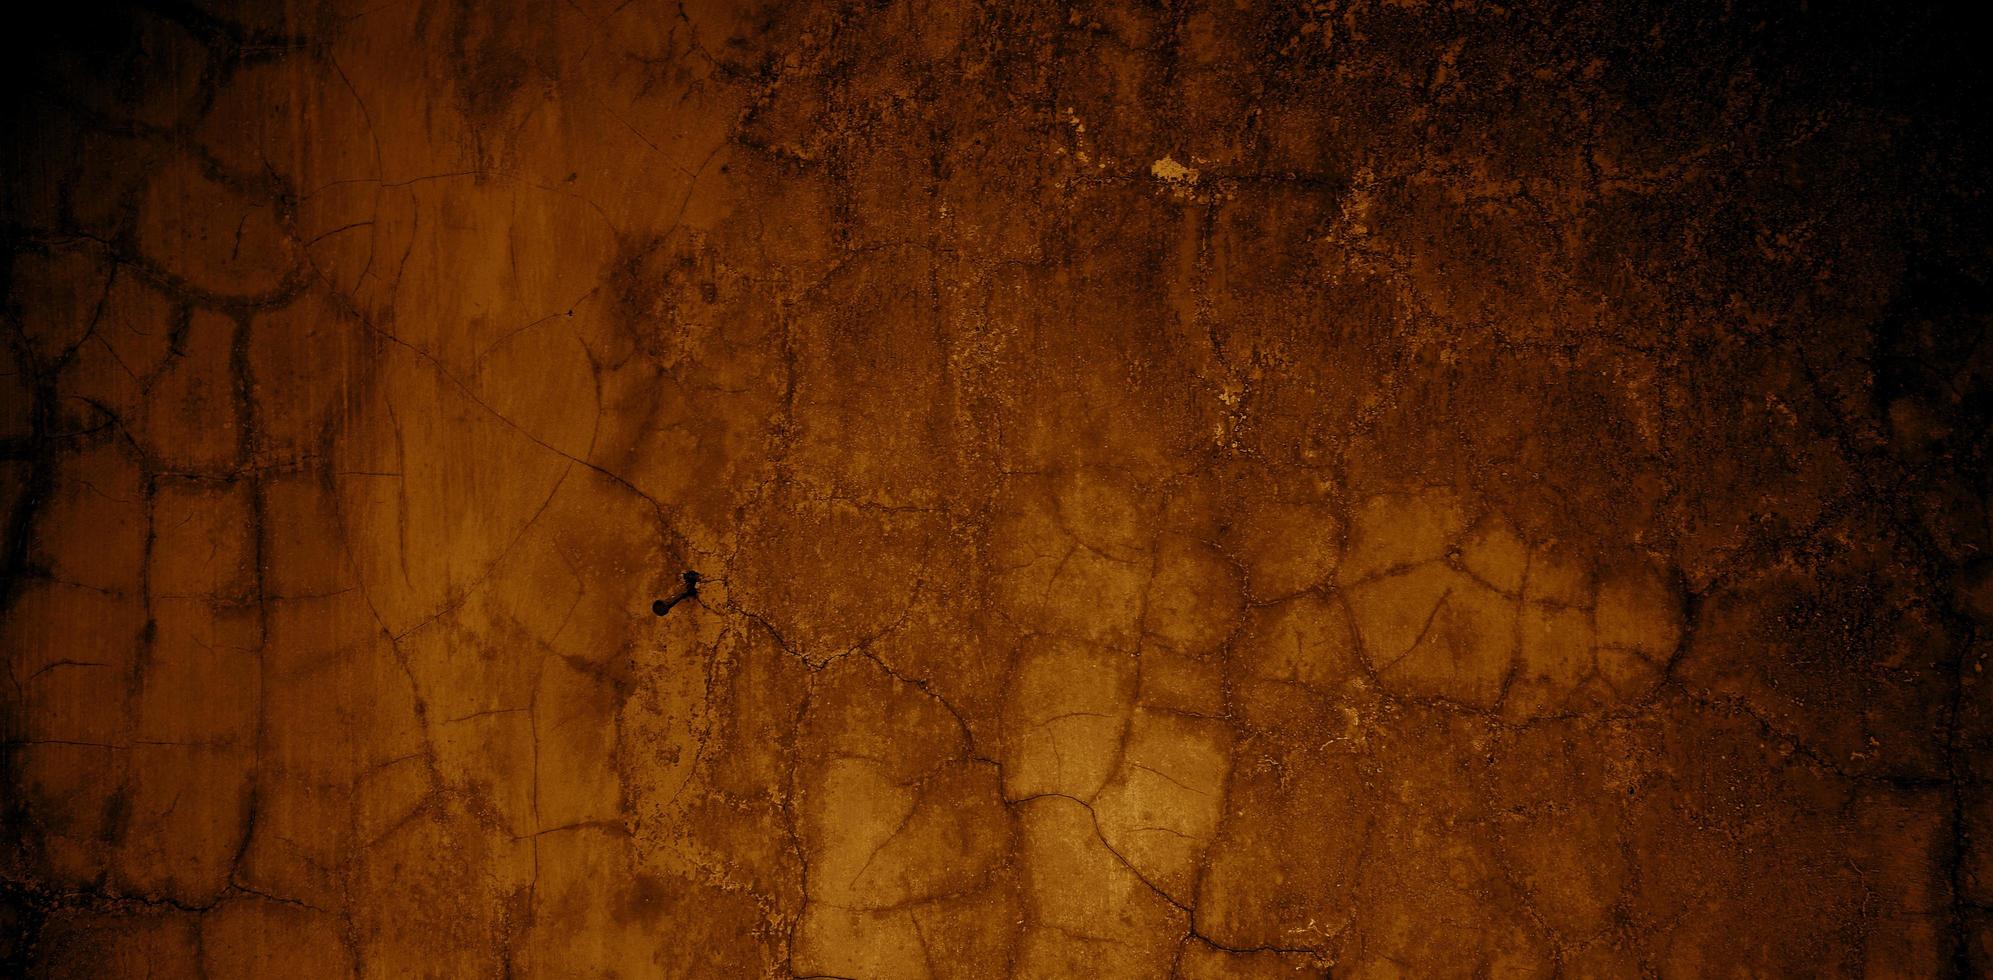 Textura de paredes de hormigón viejo. paredes agrietadas de estuco para el fondo foto